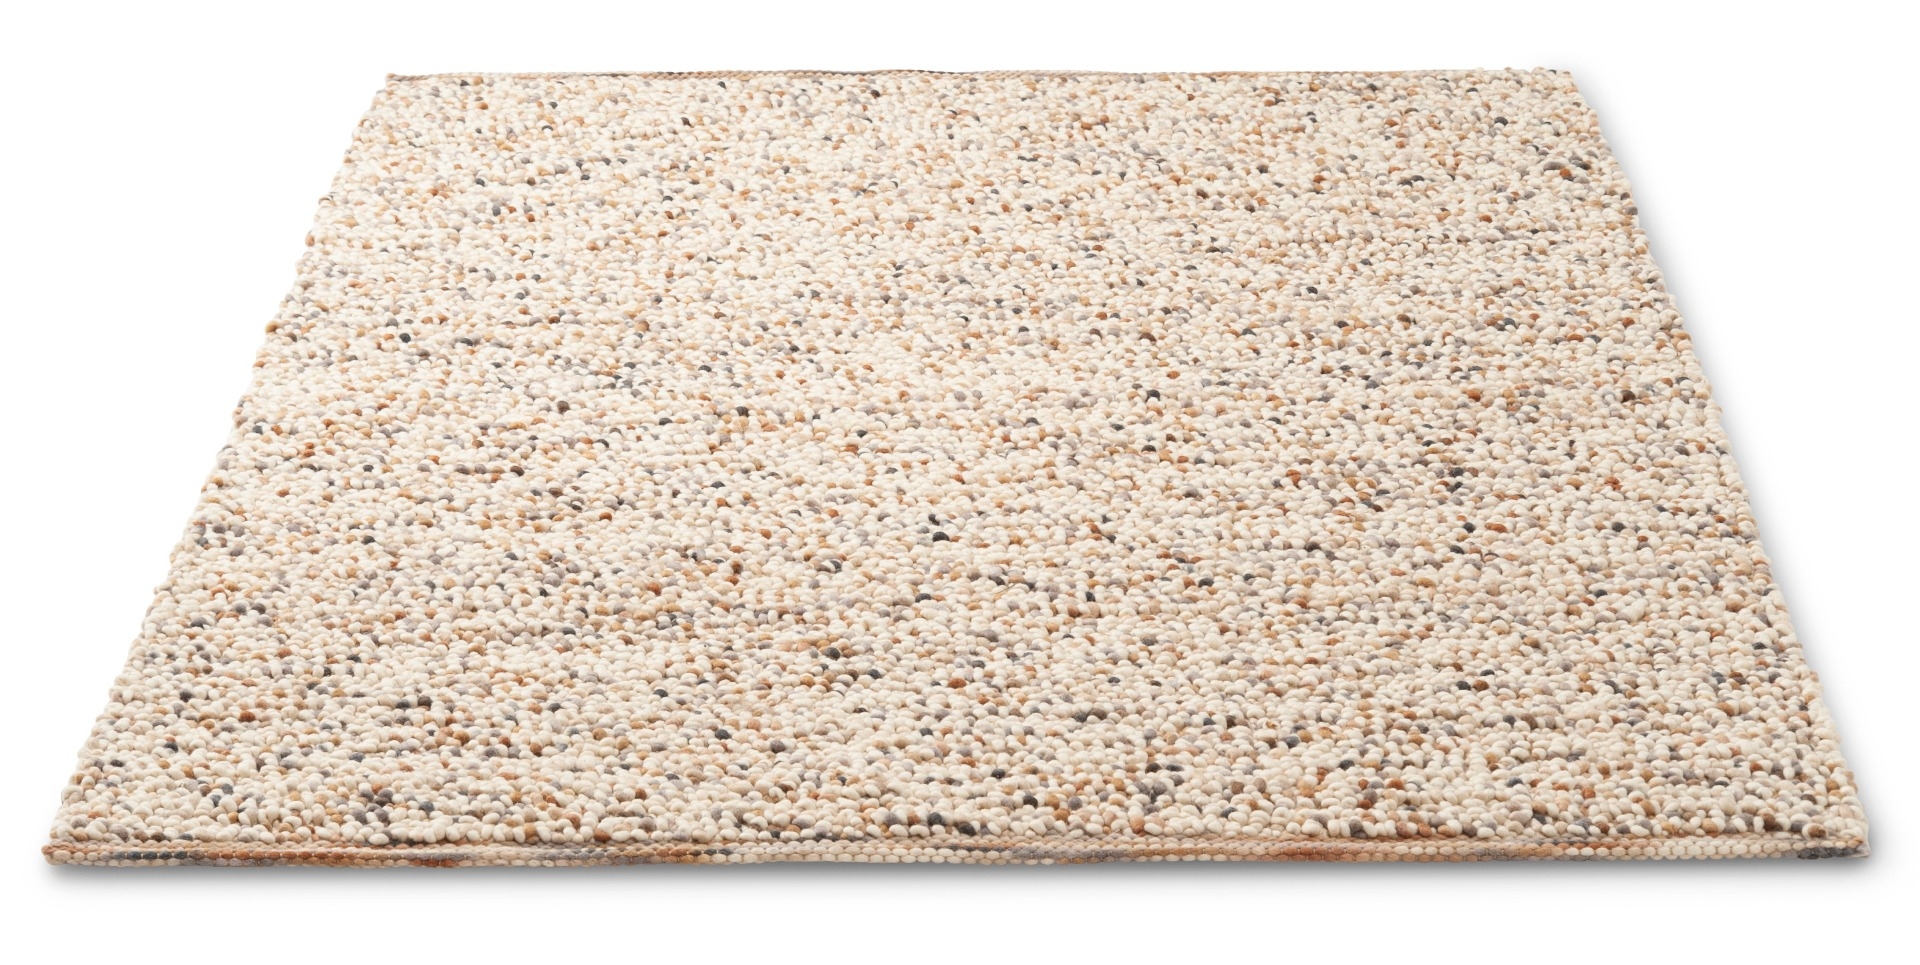 Beach Sand Handwoven Rug ☞ Size: 140 x 200 cm